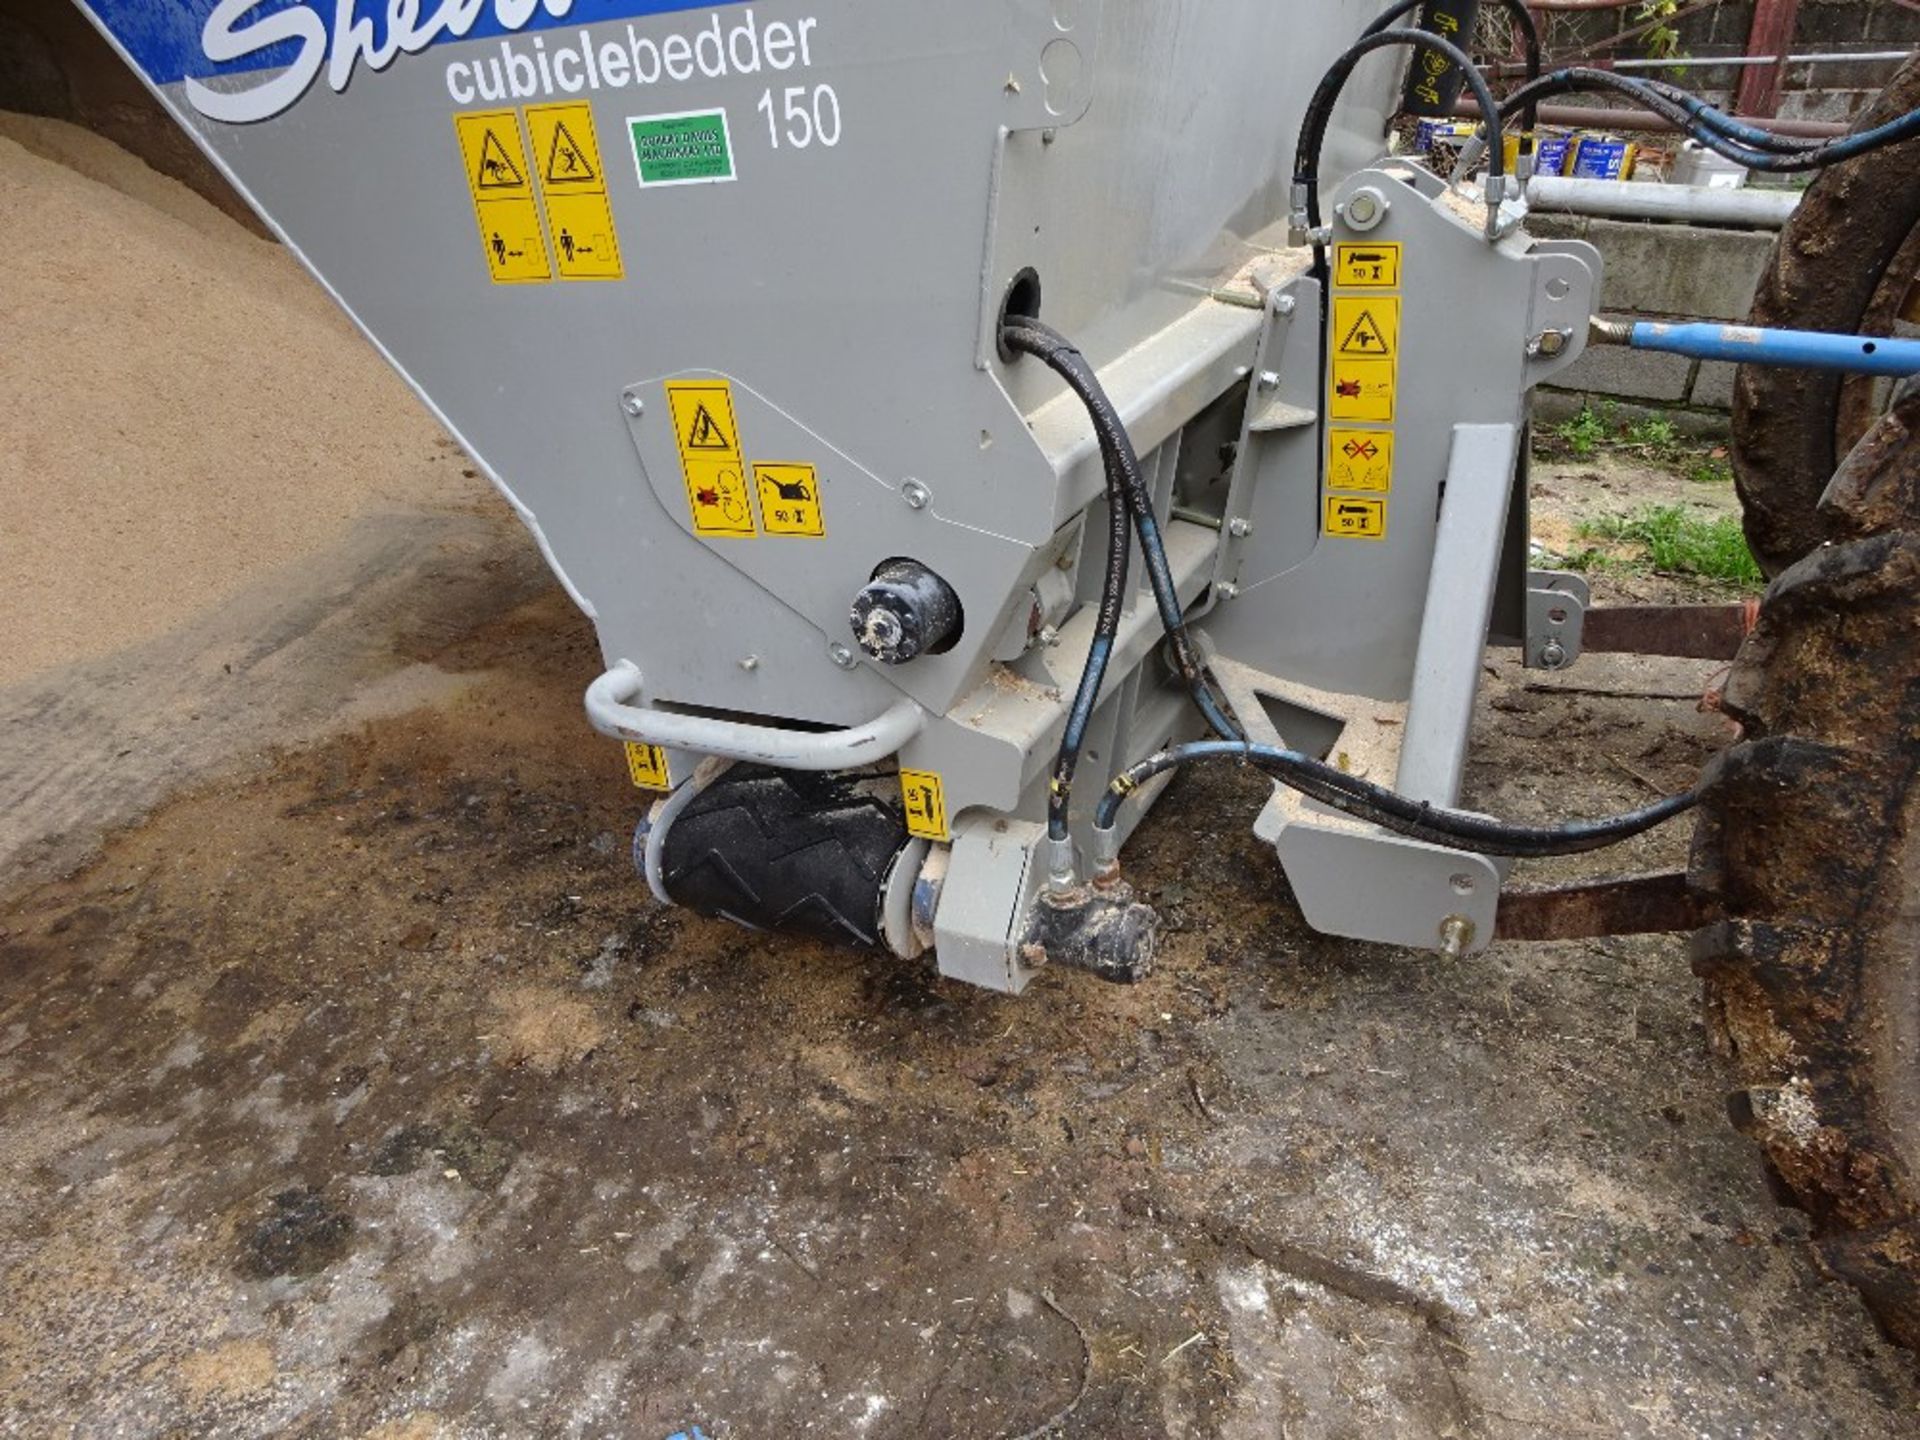 Shelbourne Sawdust Dispenser 2015 - Image 3 of 3